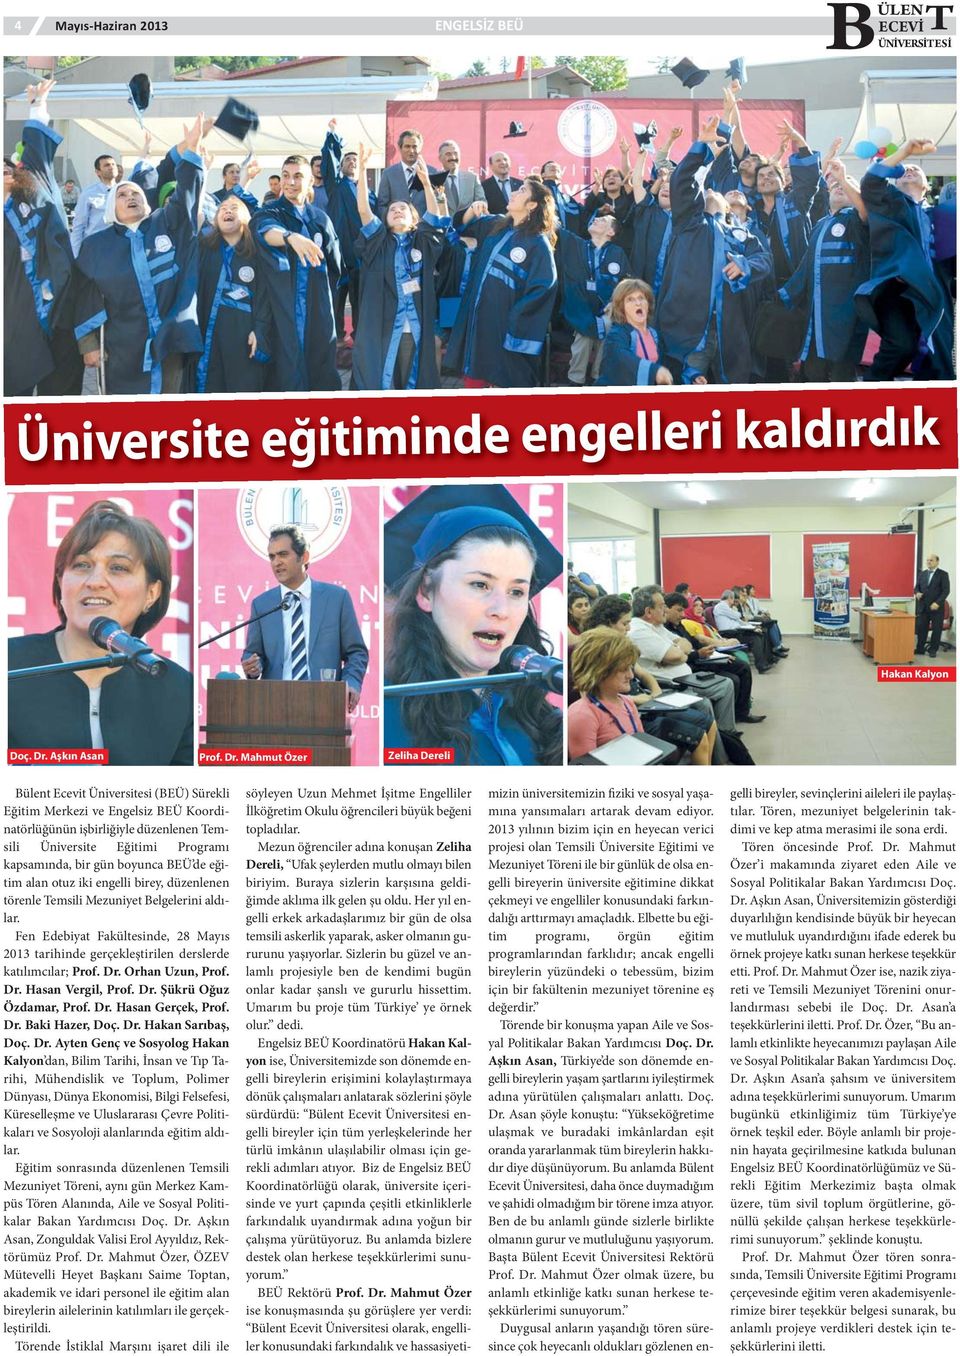 Mahmut Özer Zeliha Dereli Bülent Ecevit Üniversitesi (BEÜ) Sürekli Eğitim Merkezi ve Engelsiz BEÜ Koordinatörlüğünün işbirliğiyle düzenlenen Temsili Üniversite Eğitimi Programı kapsamında, bir gün